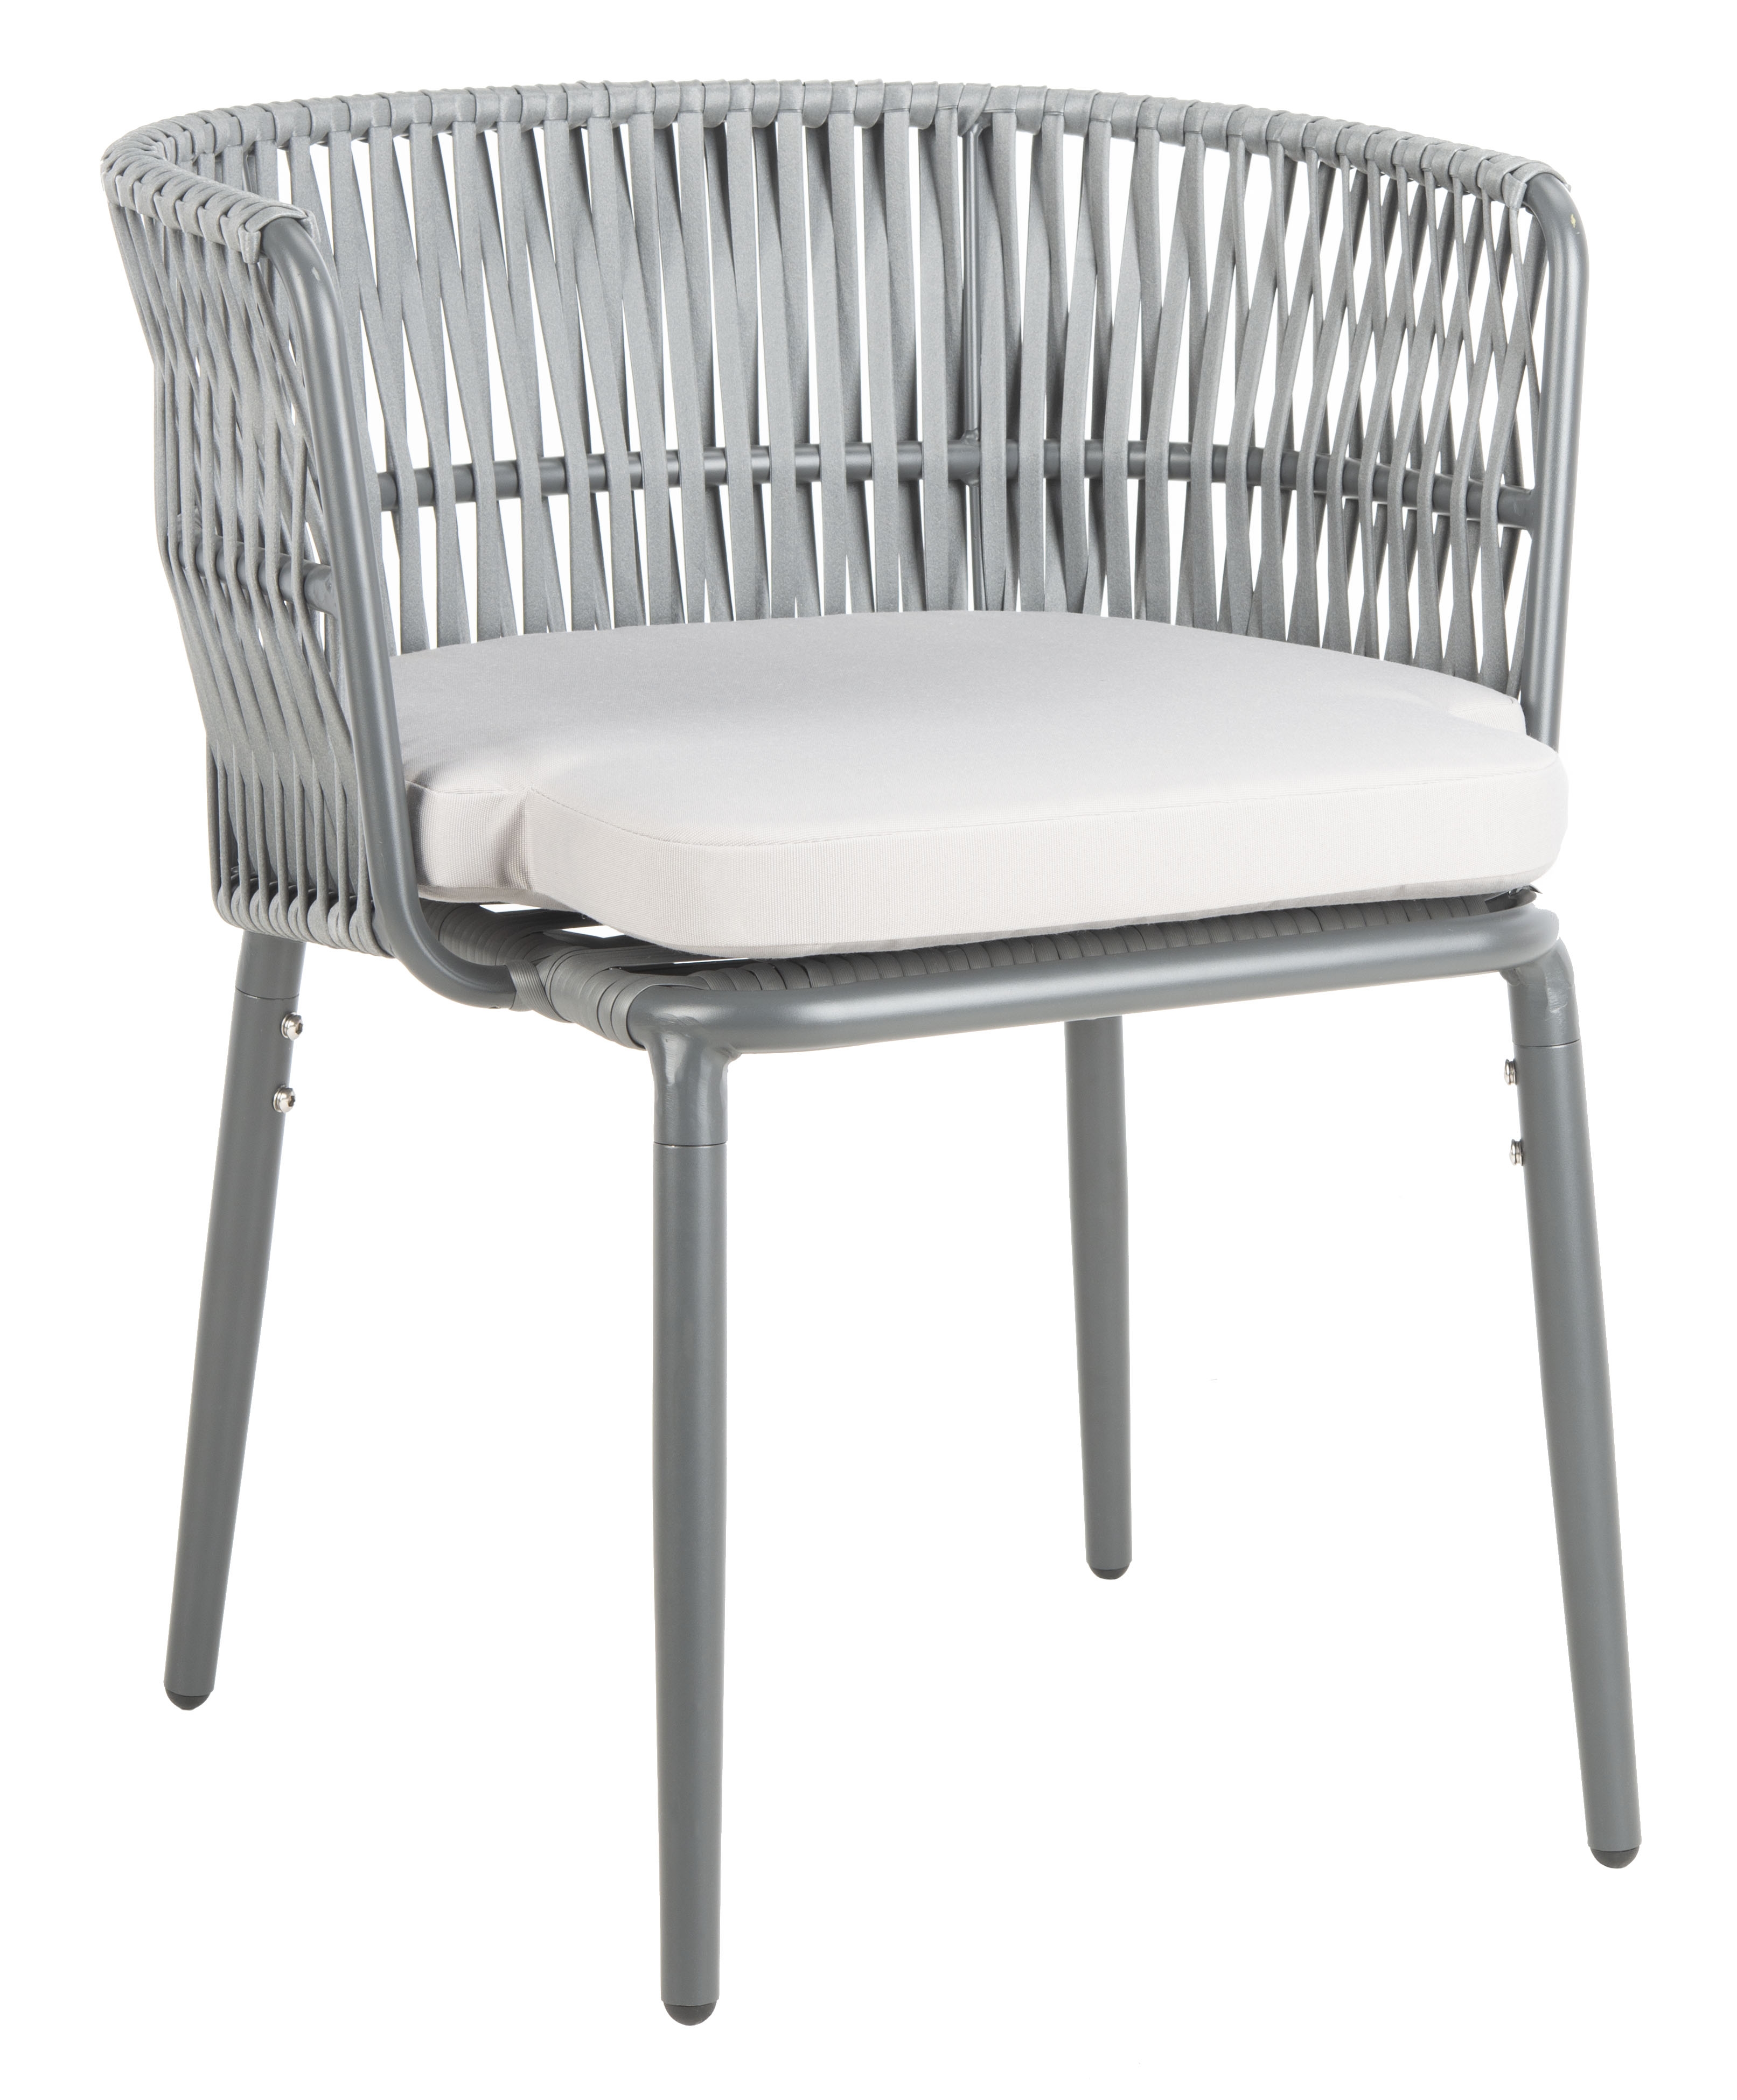 Kiyan Rope Chair - Grey/Grey Cushion - Safavieh - Image 0